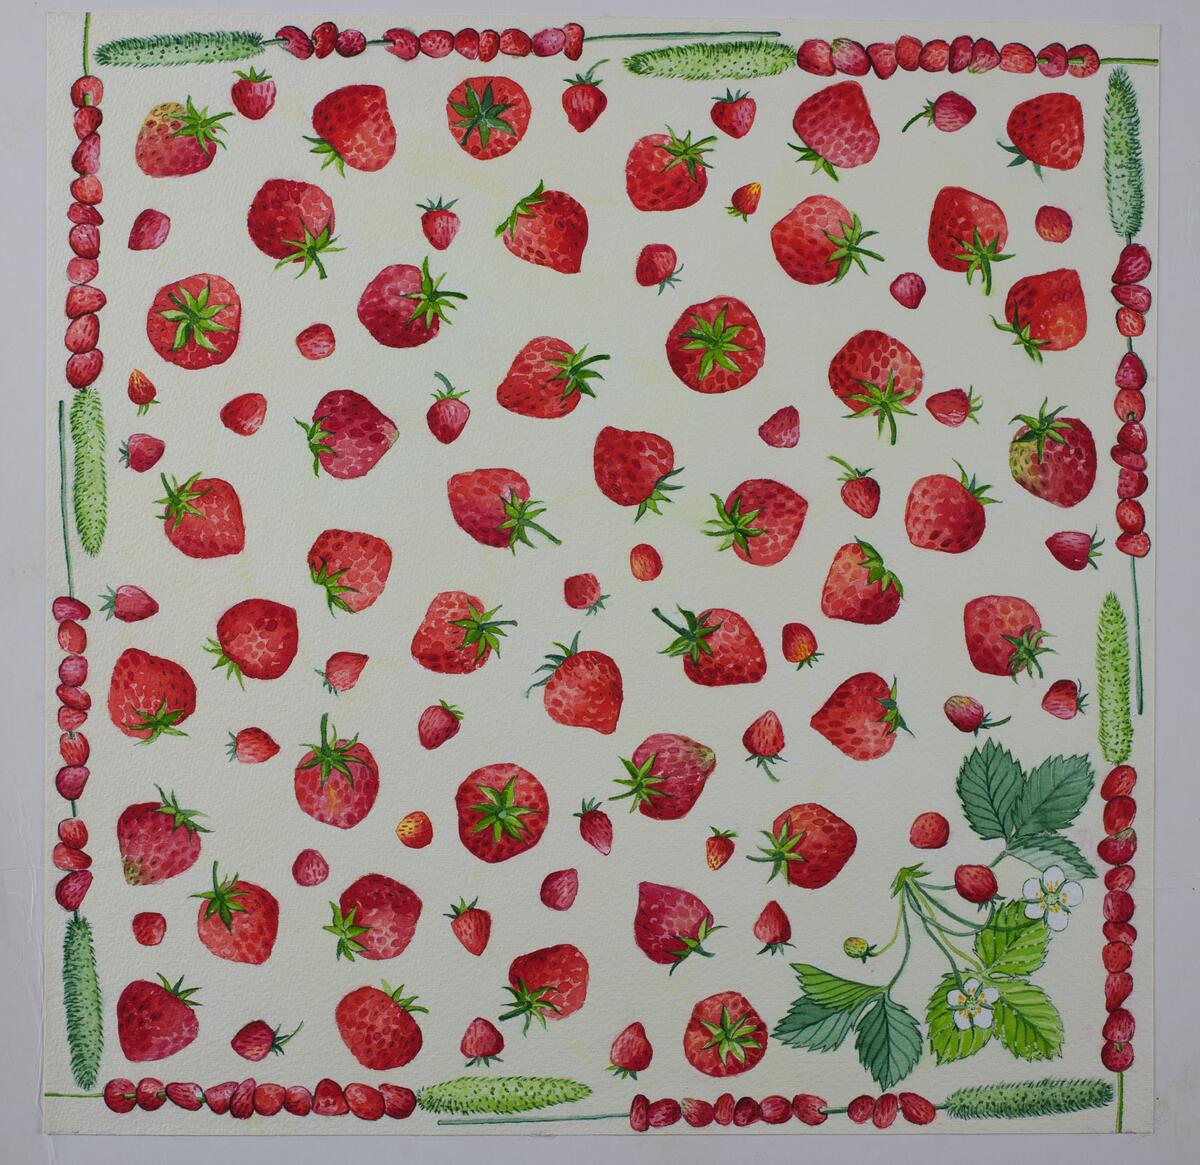 Förlaga till servett med jordgubbar och en jordgubbsväxt längst ner i högra hörnet. Dekor bestående av jordgubbar trädda på strån. Vit-beige bakgrund. Runda färgprover på baksidan.